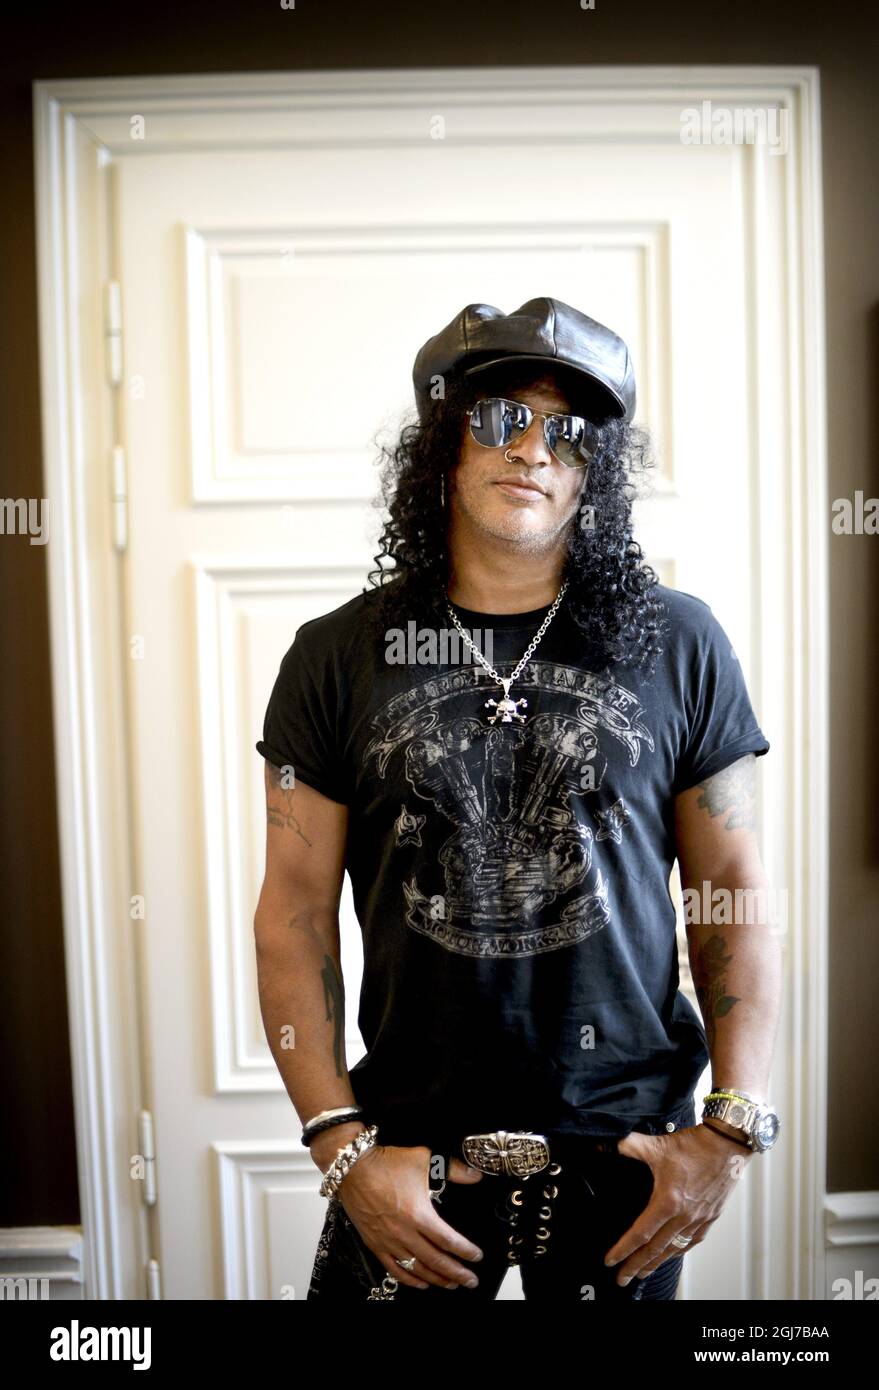 STOCKHOLM 2012-04-24 Slash, Guns N 'Roses ehemaliger Gitarrist, der  Schweden besucht, um sein zweites Soloalbum zu promoten. Foto: Pontus  Lundahl / SCANPIX / kod 10050 Stockfotografie - Alamy